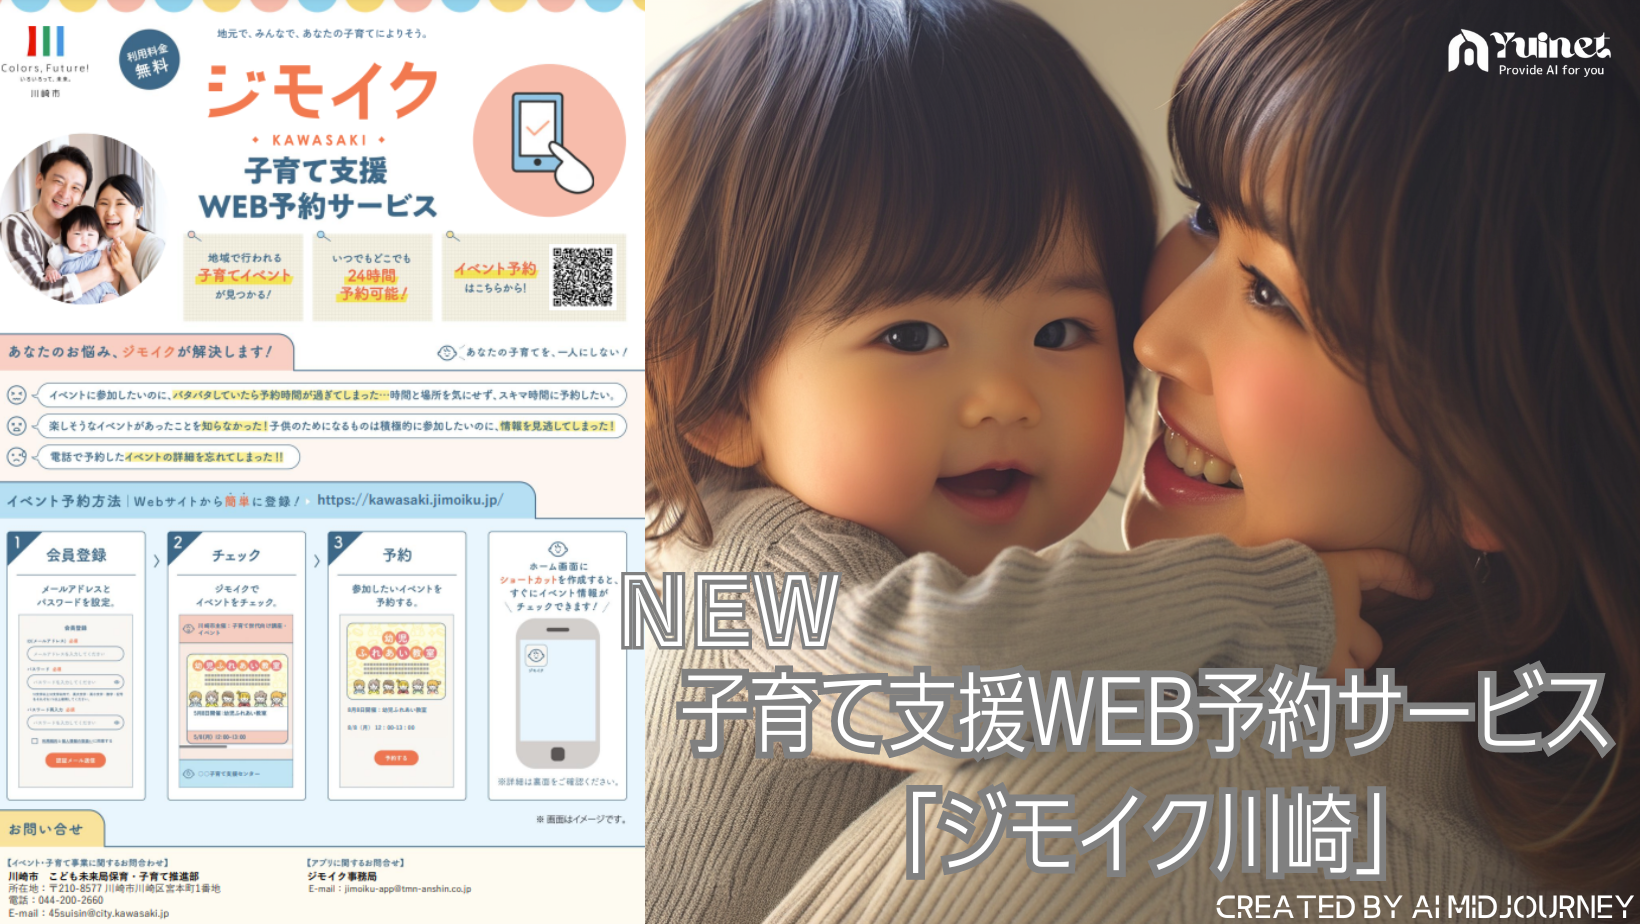 New 子育て支援WEB予約サービス「ジモイク川崎」のご案内